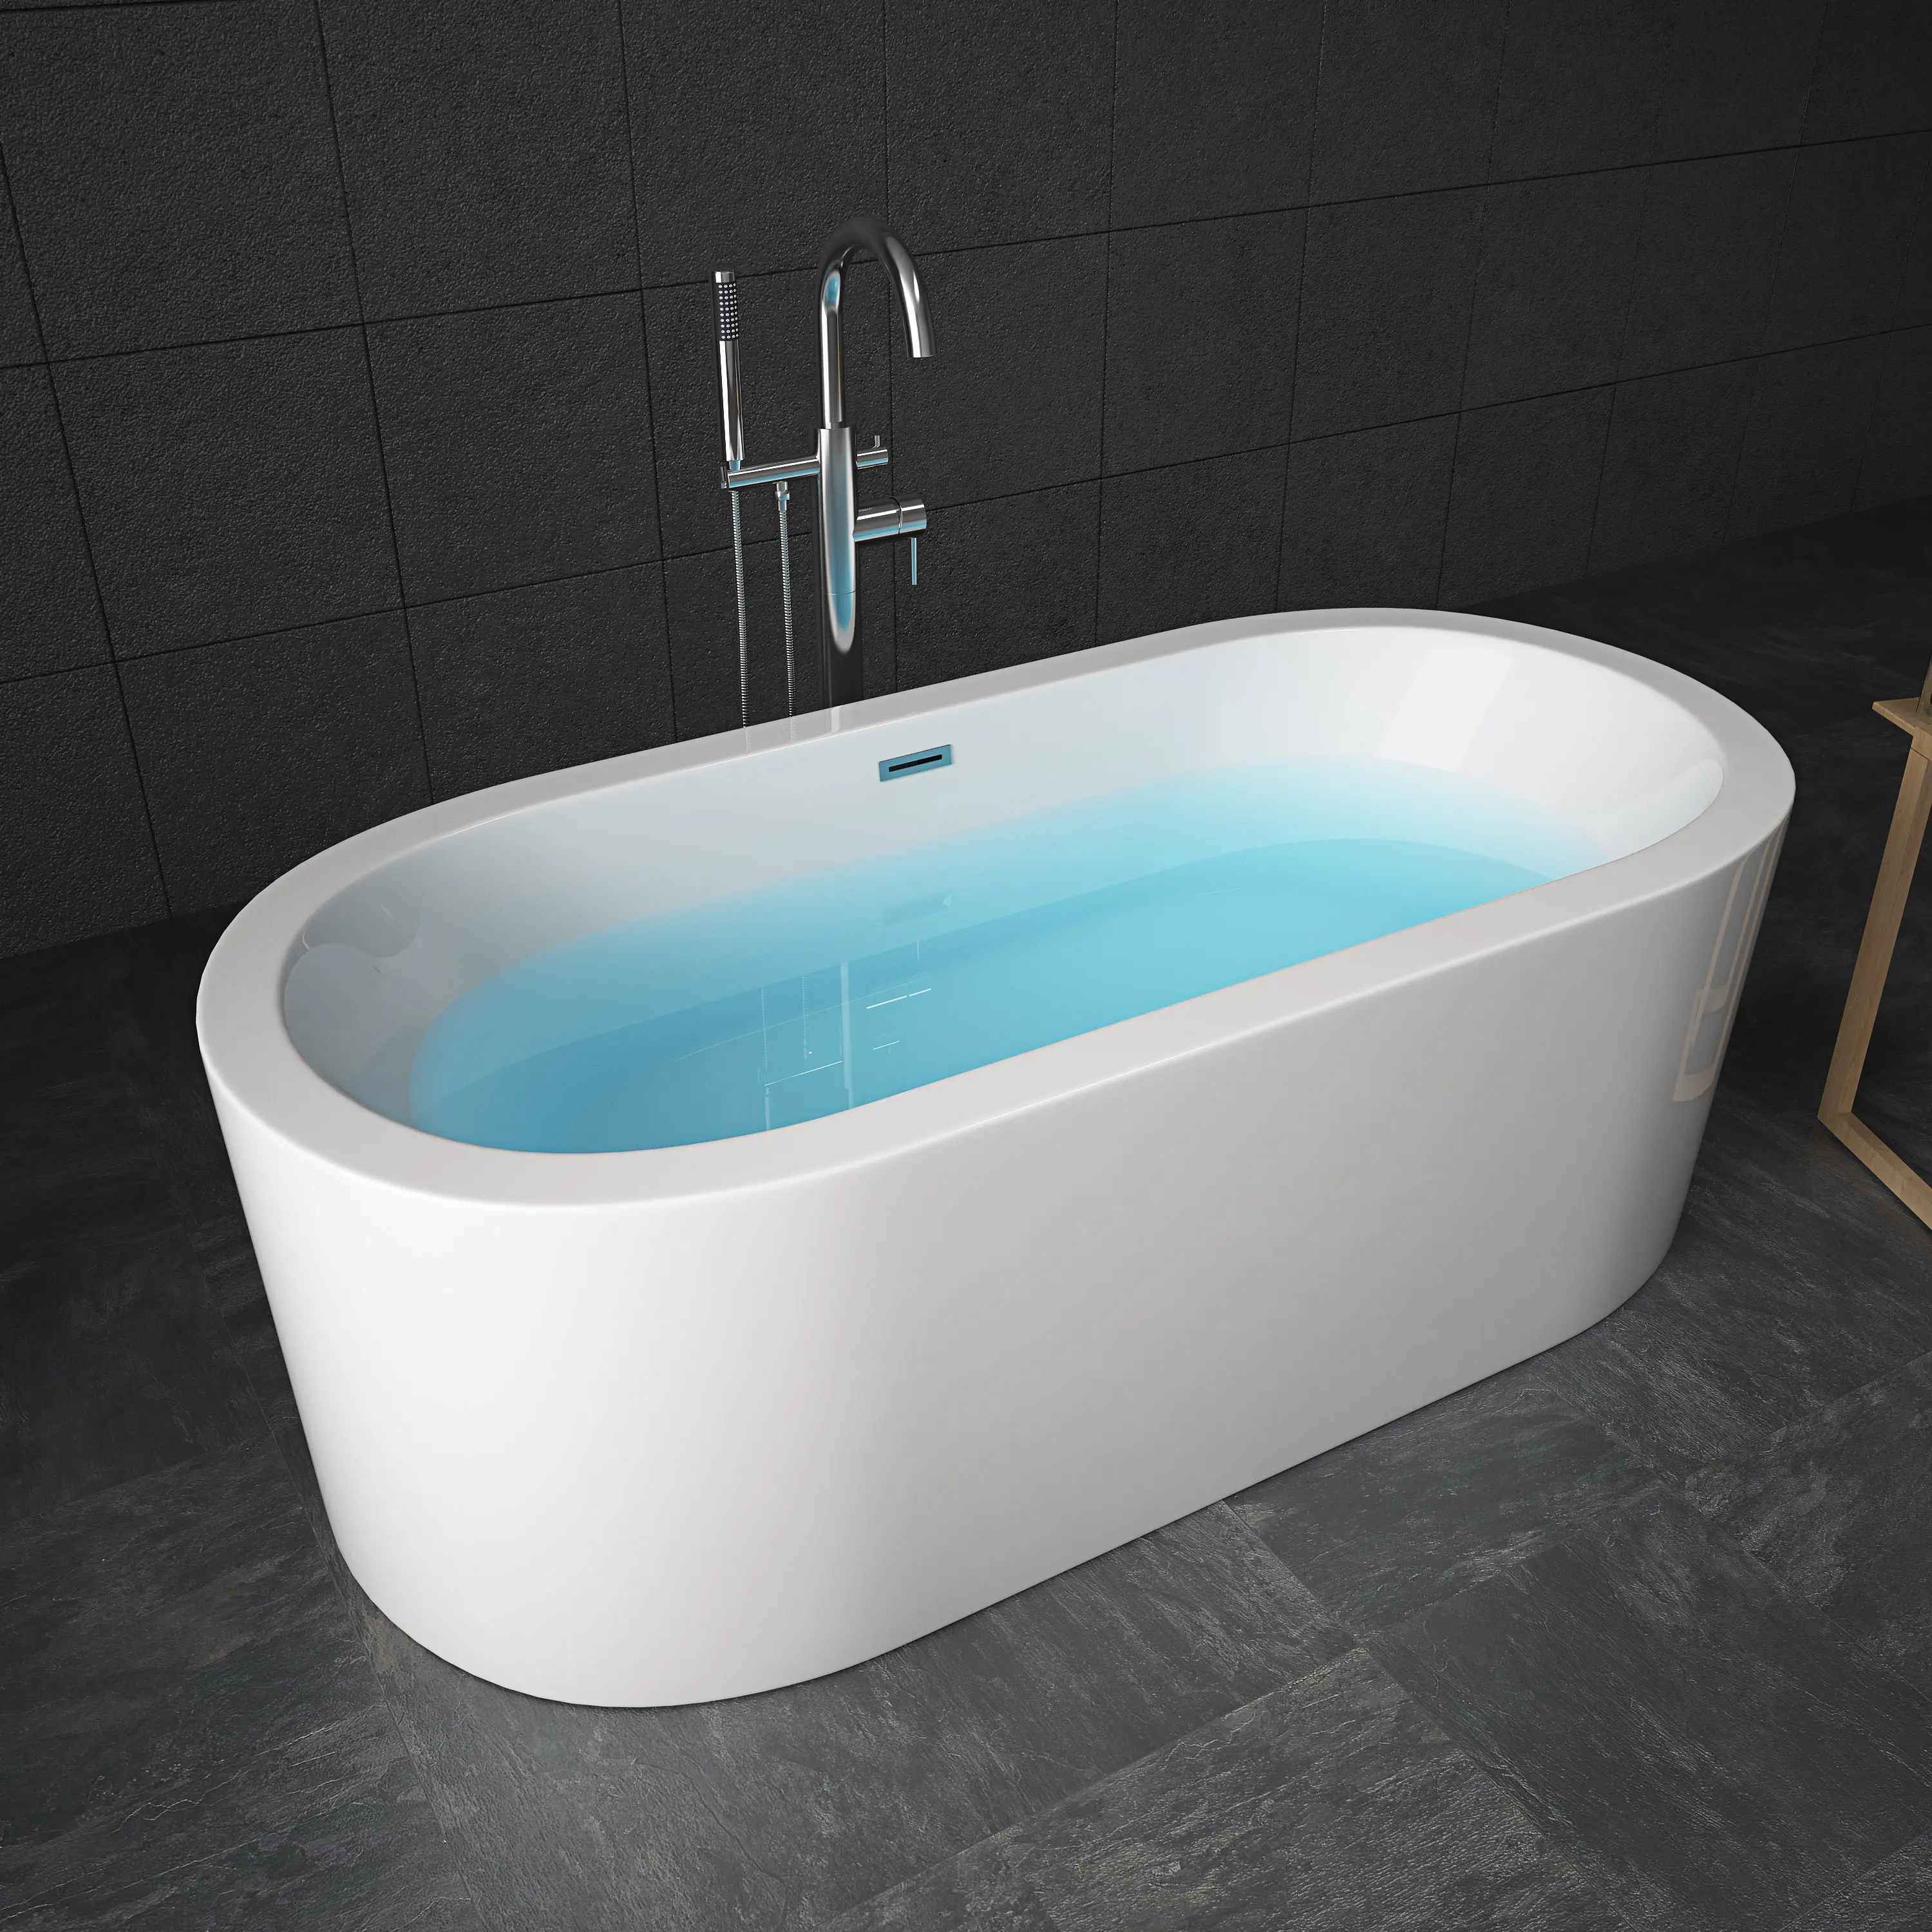 Cupc Certified 67 ''Acryl Oval Freistehende Badewanne Einweichen Freistehende Badewanne Modern Relax Einweichen